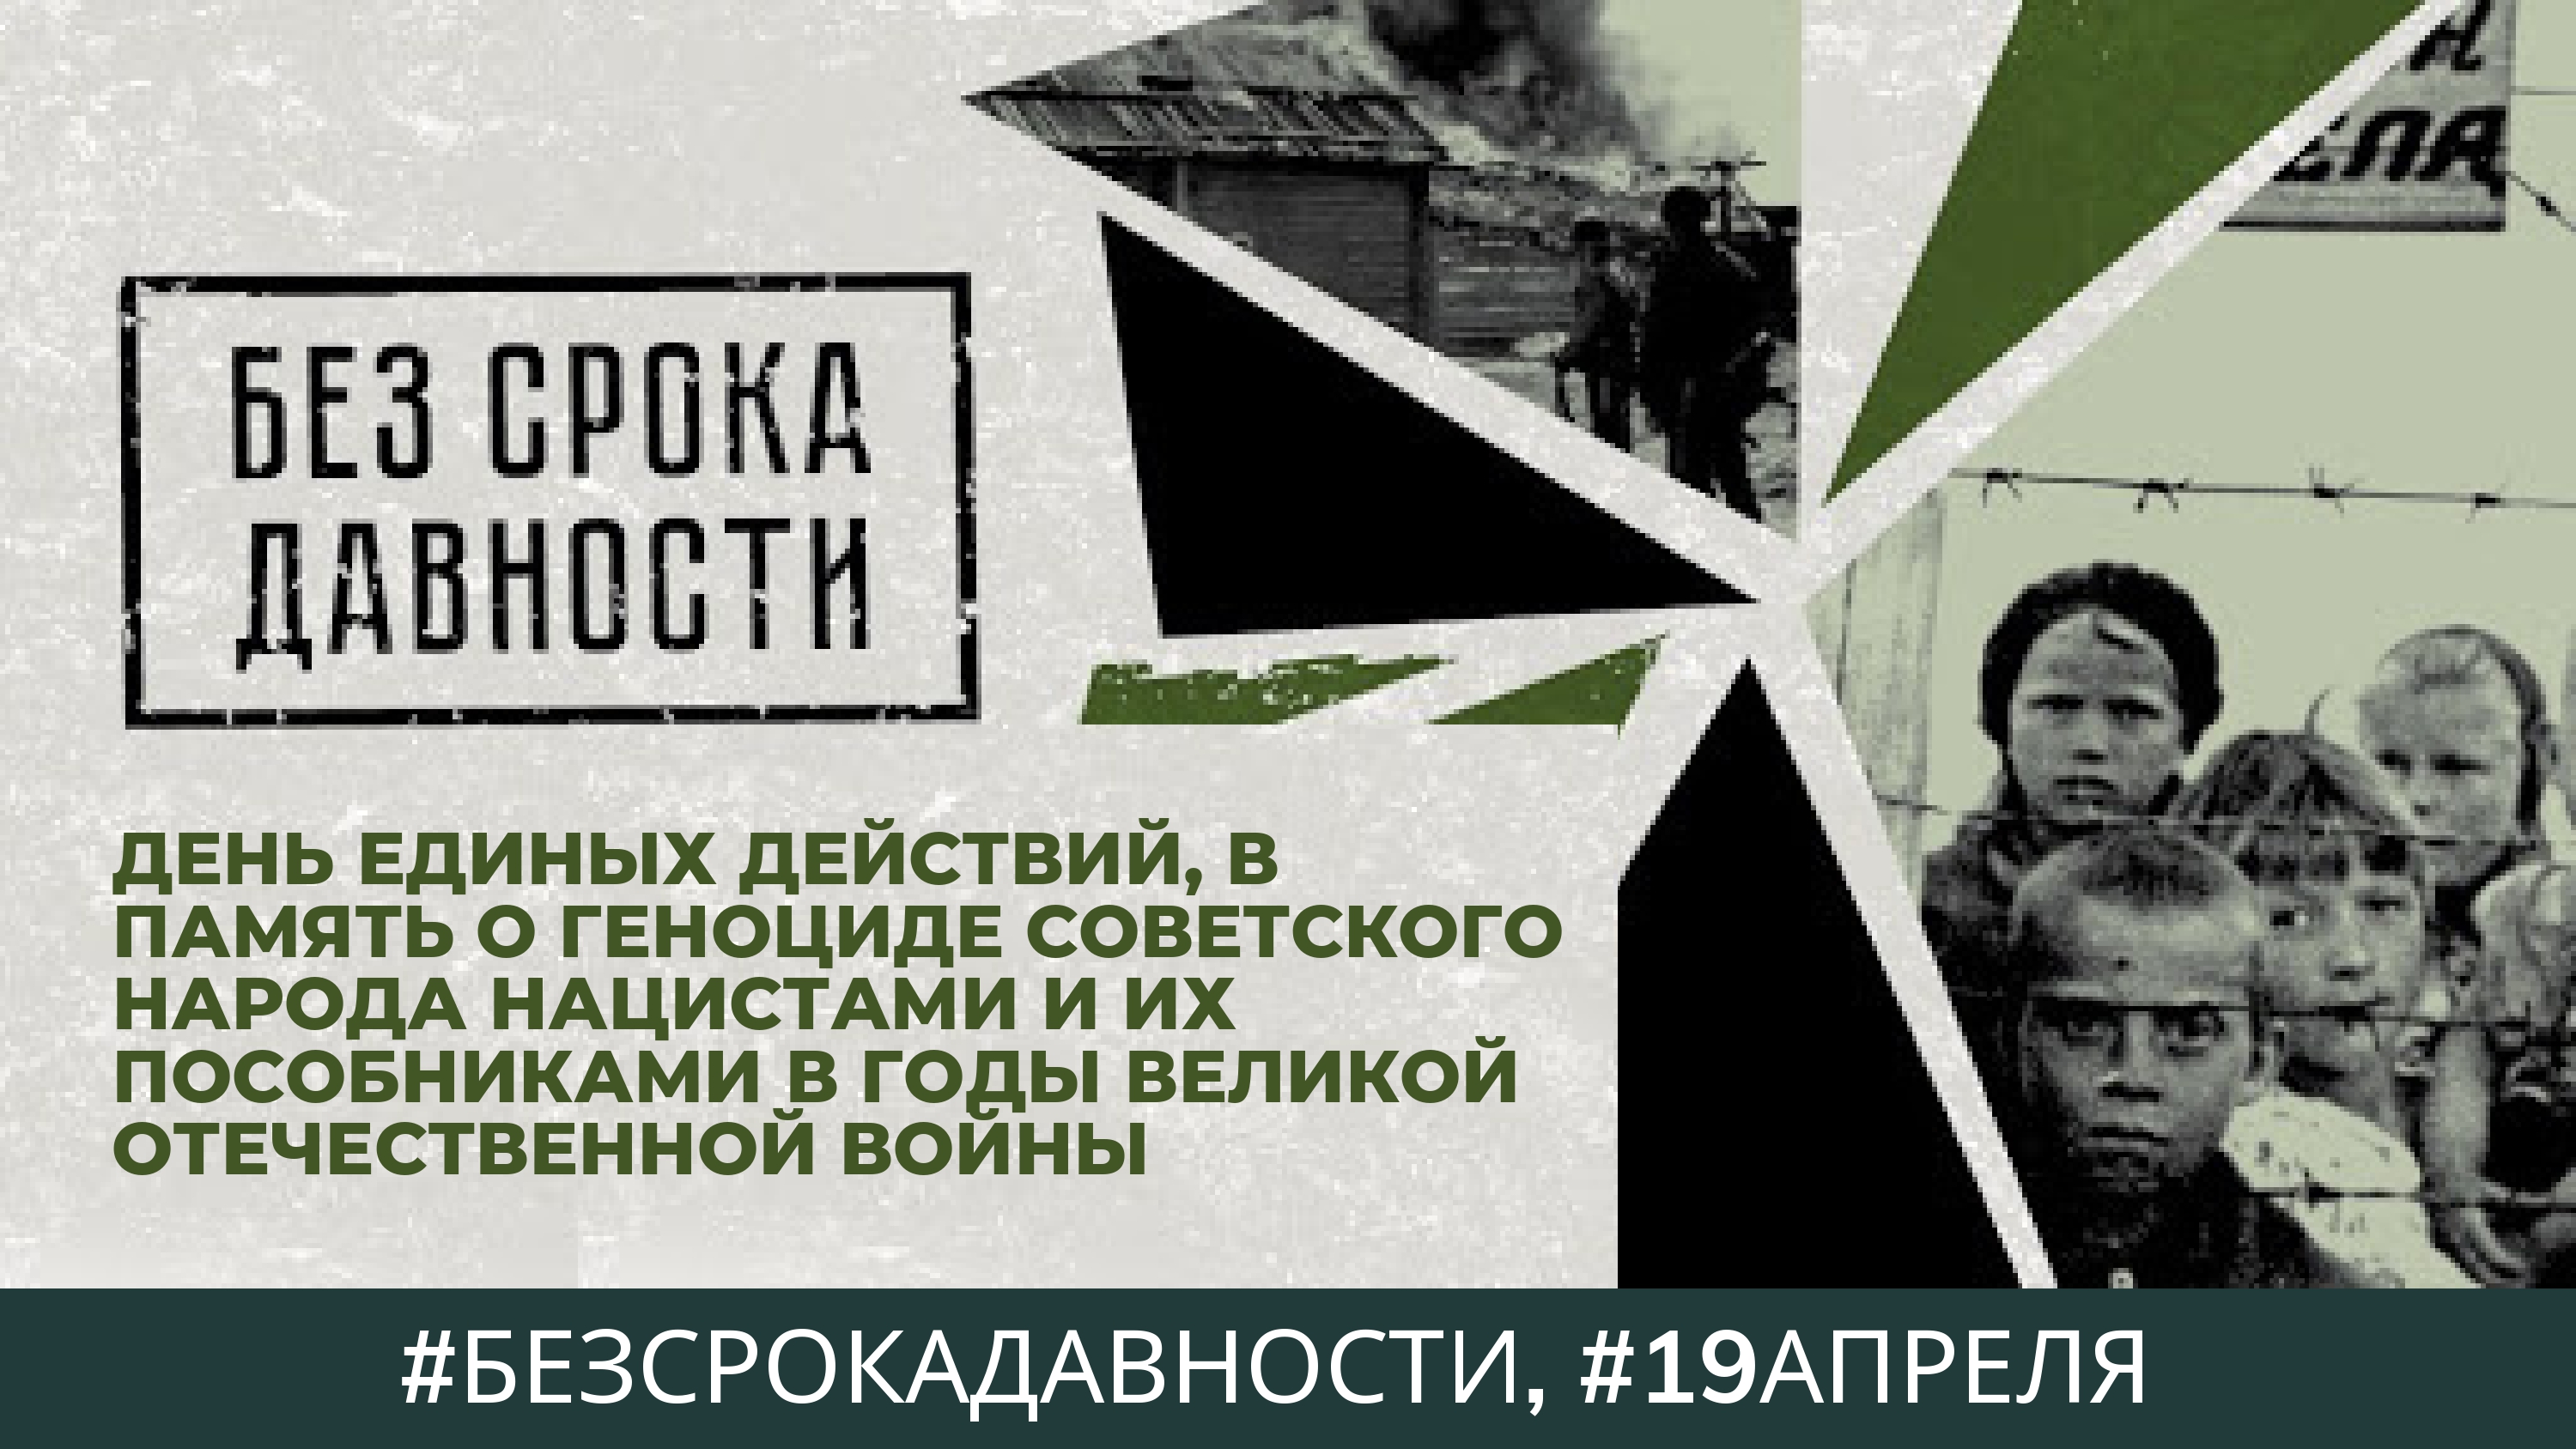 19 апреля День памяти о геноциде советского народа нацистами и их пособниками в годы Великой Отечественной войны.